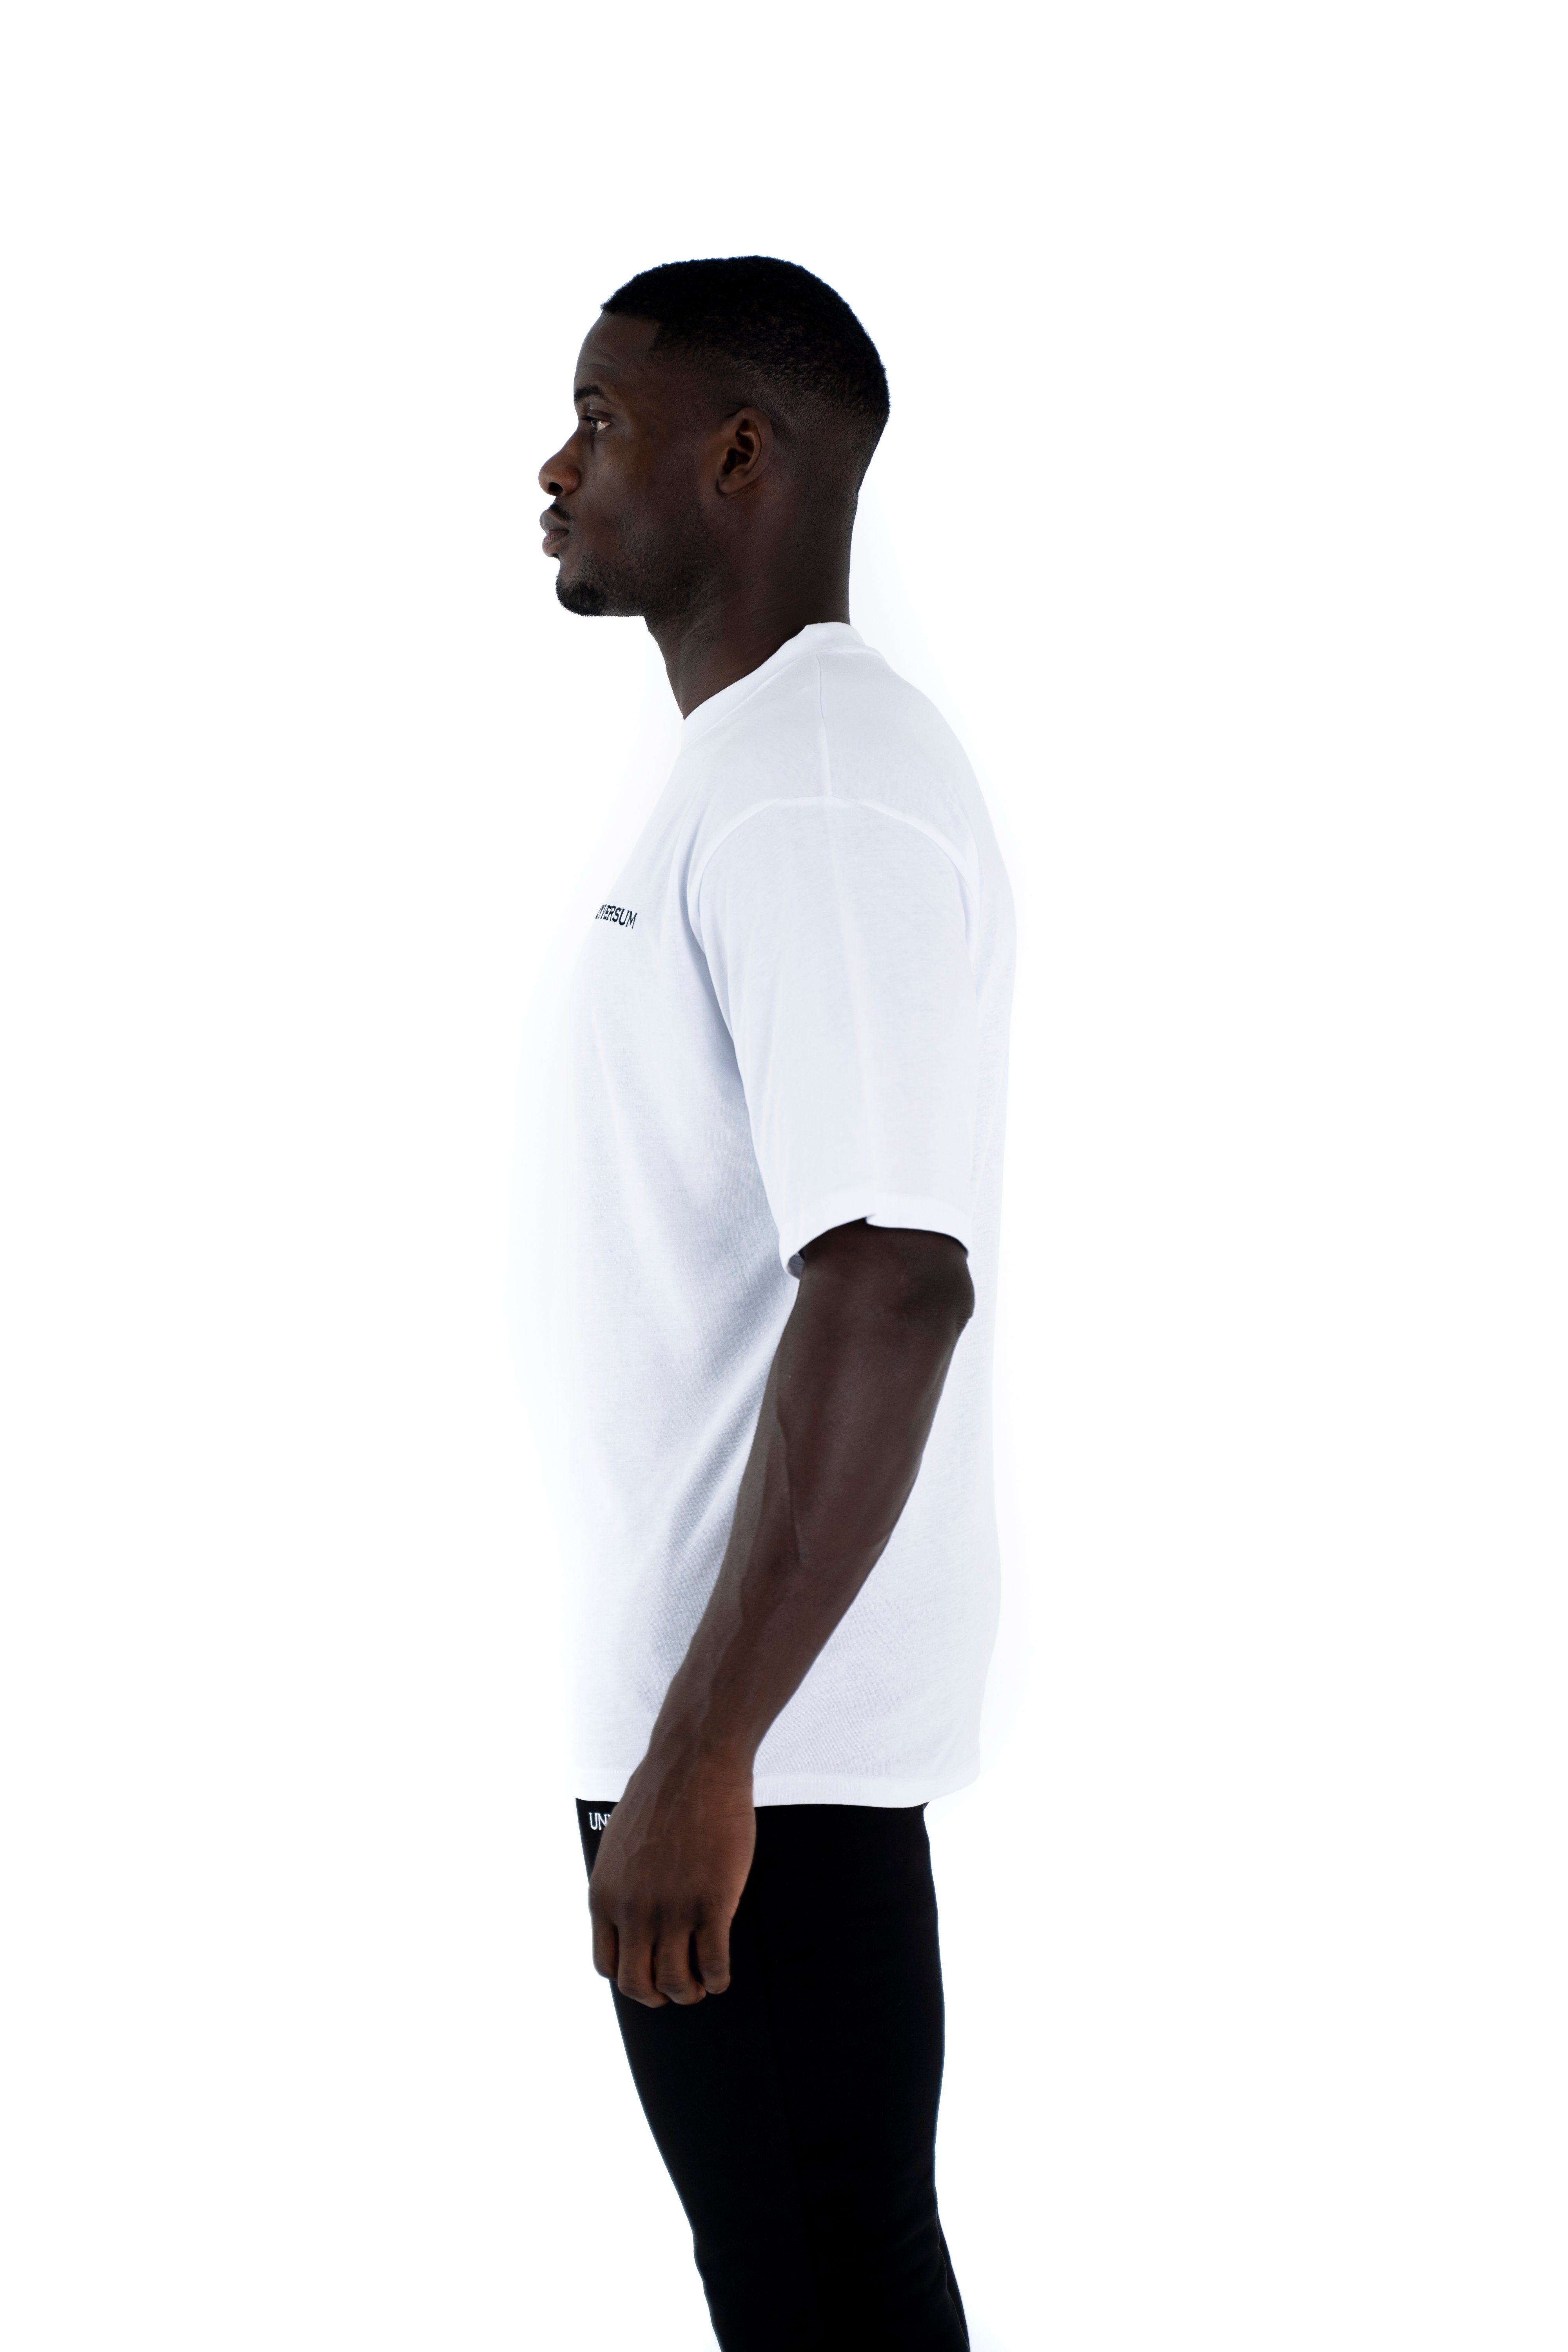 Oversize Rundhalsausschnitt, Modern Baumwoll Shirt, Universum T-Shirt Cotton Sportwear T-Shirt C-Neck 100% Weiß